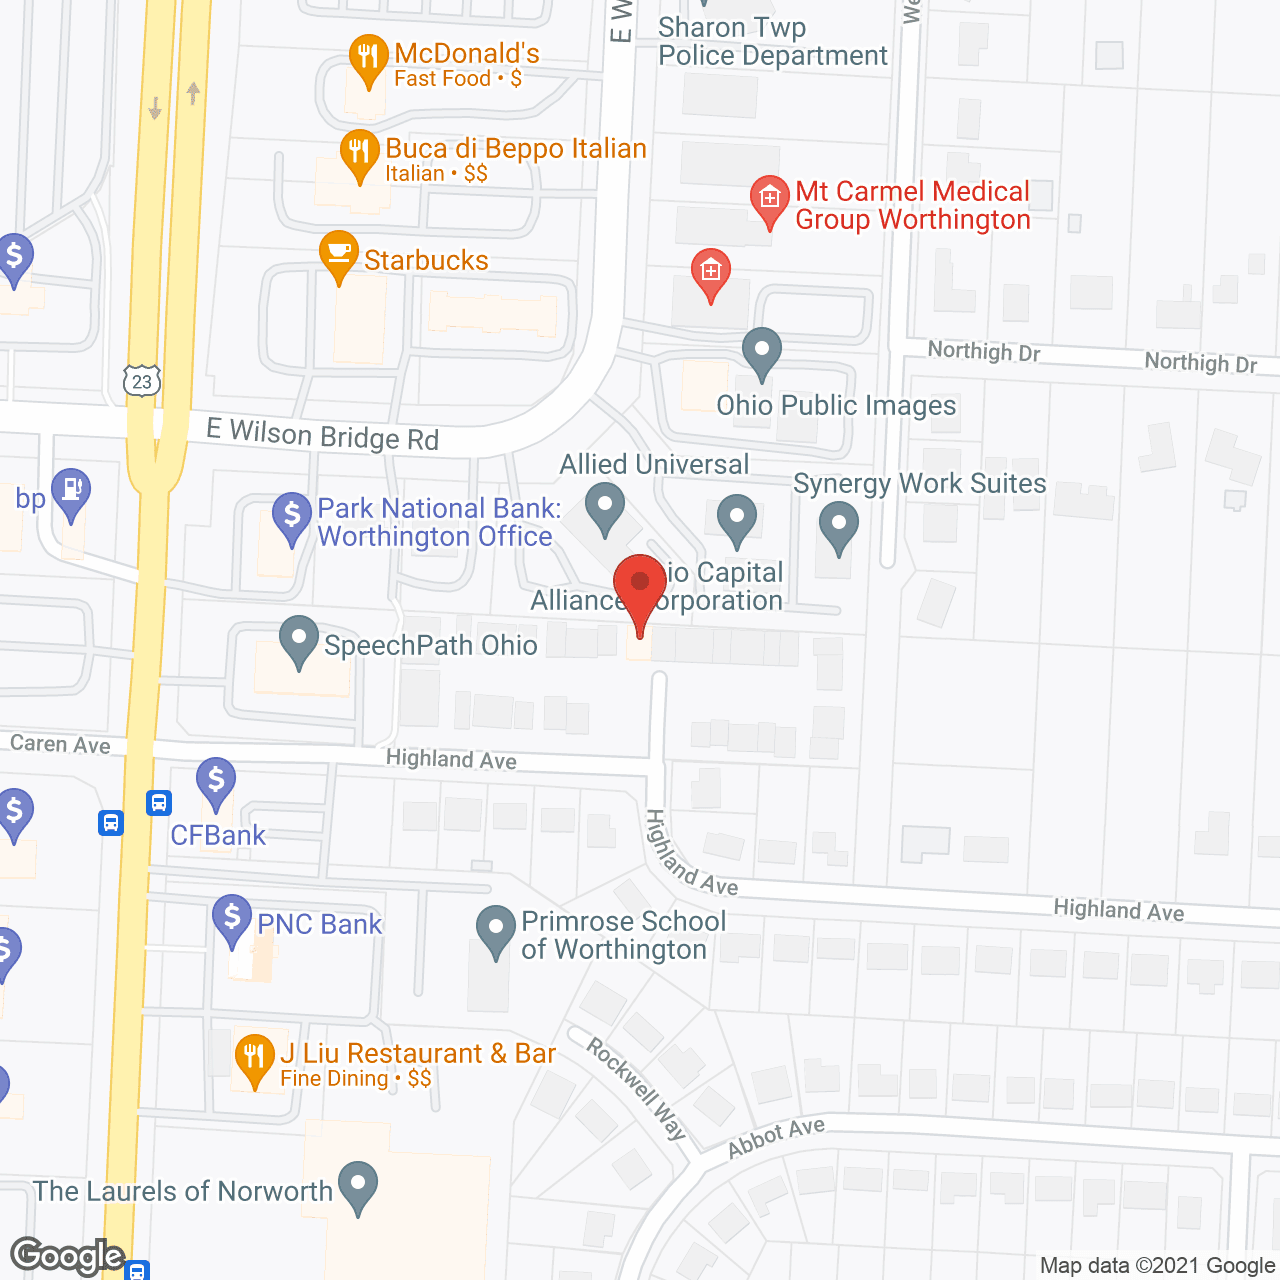 Melbourne Village in google map